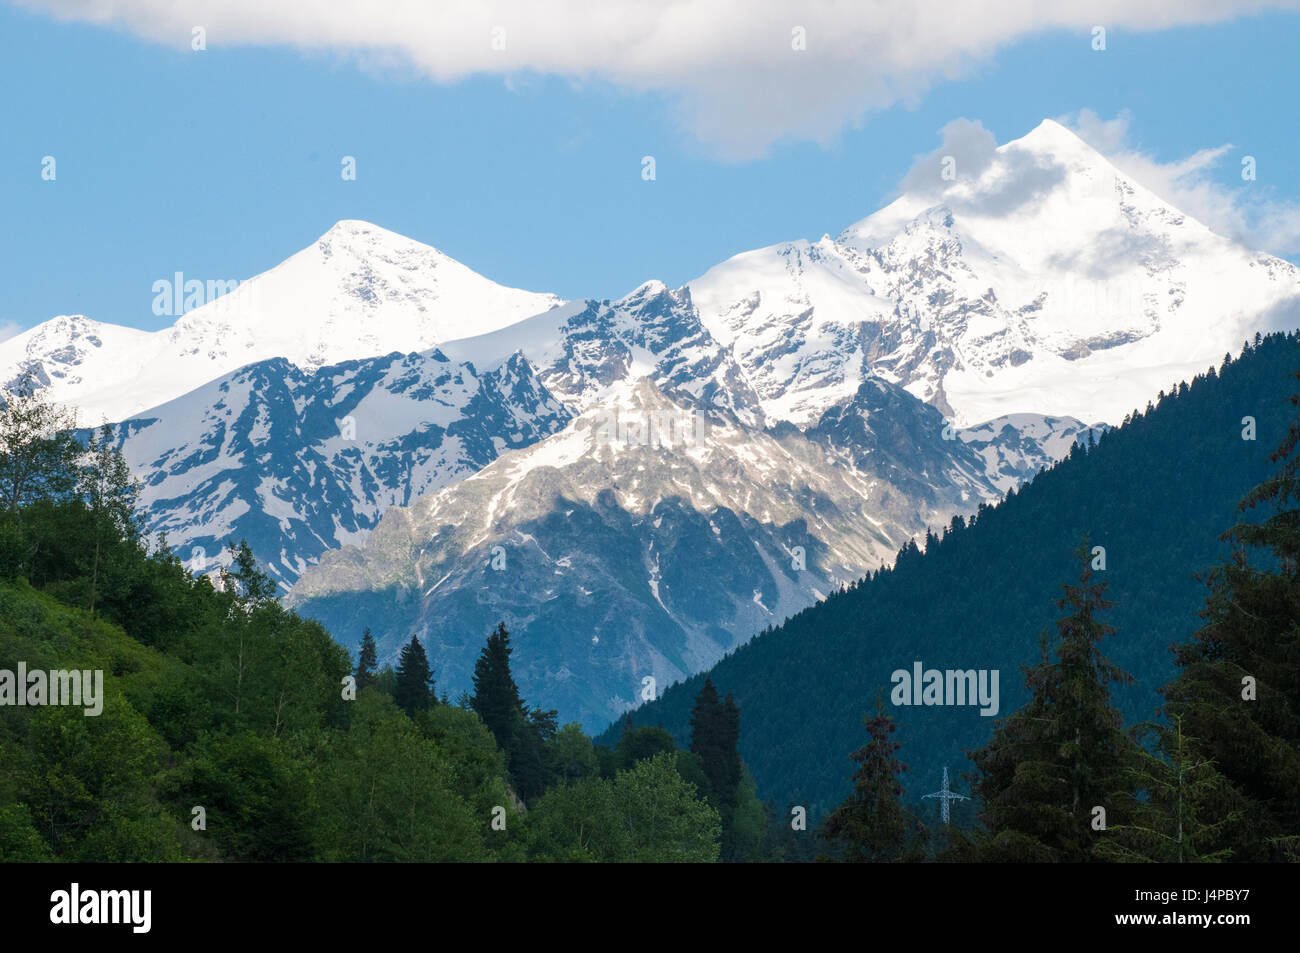 Peaks of the High Caucasus rise above Mestia in the Svaneti region, Republic of Georgia Stock Photo